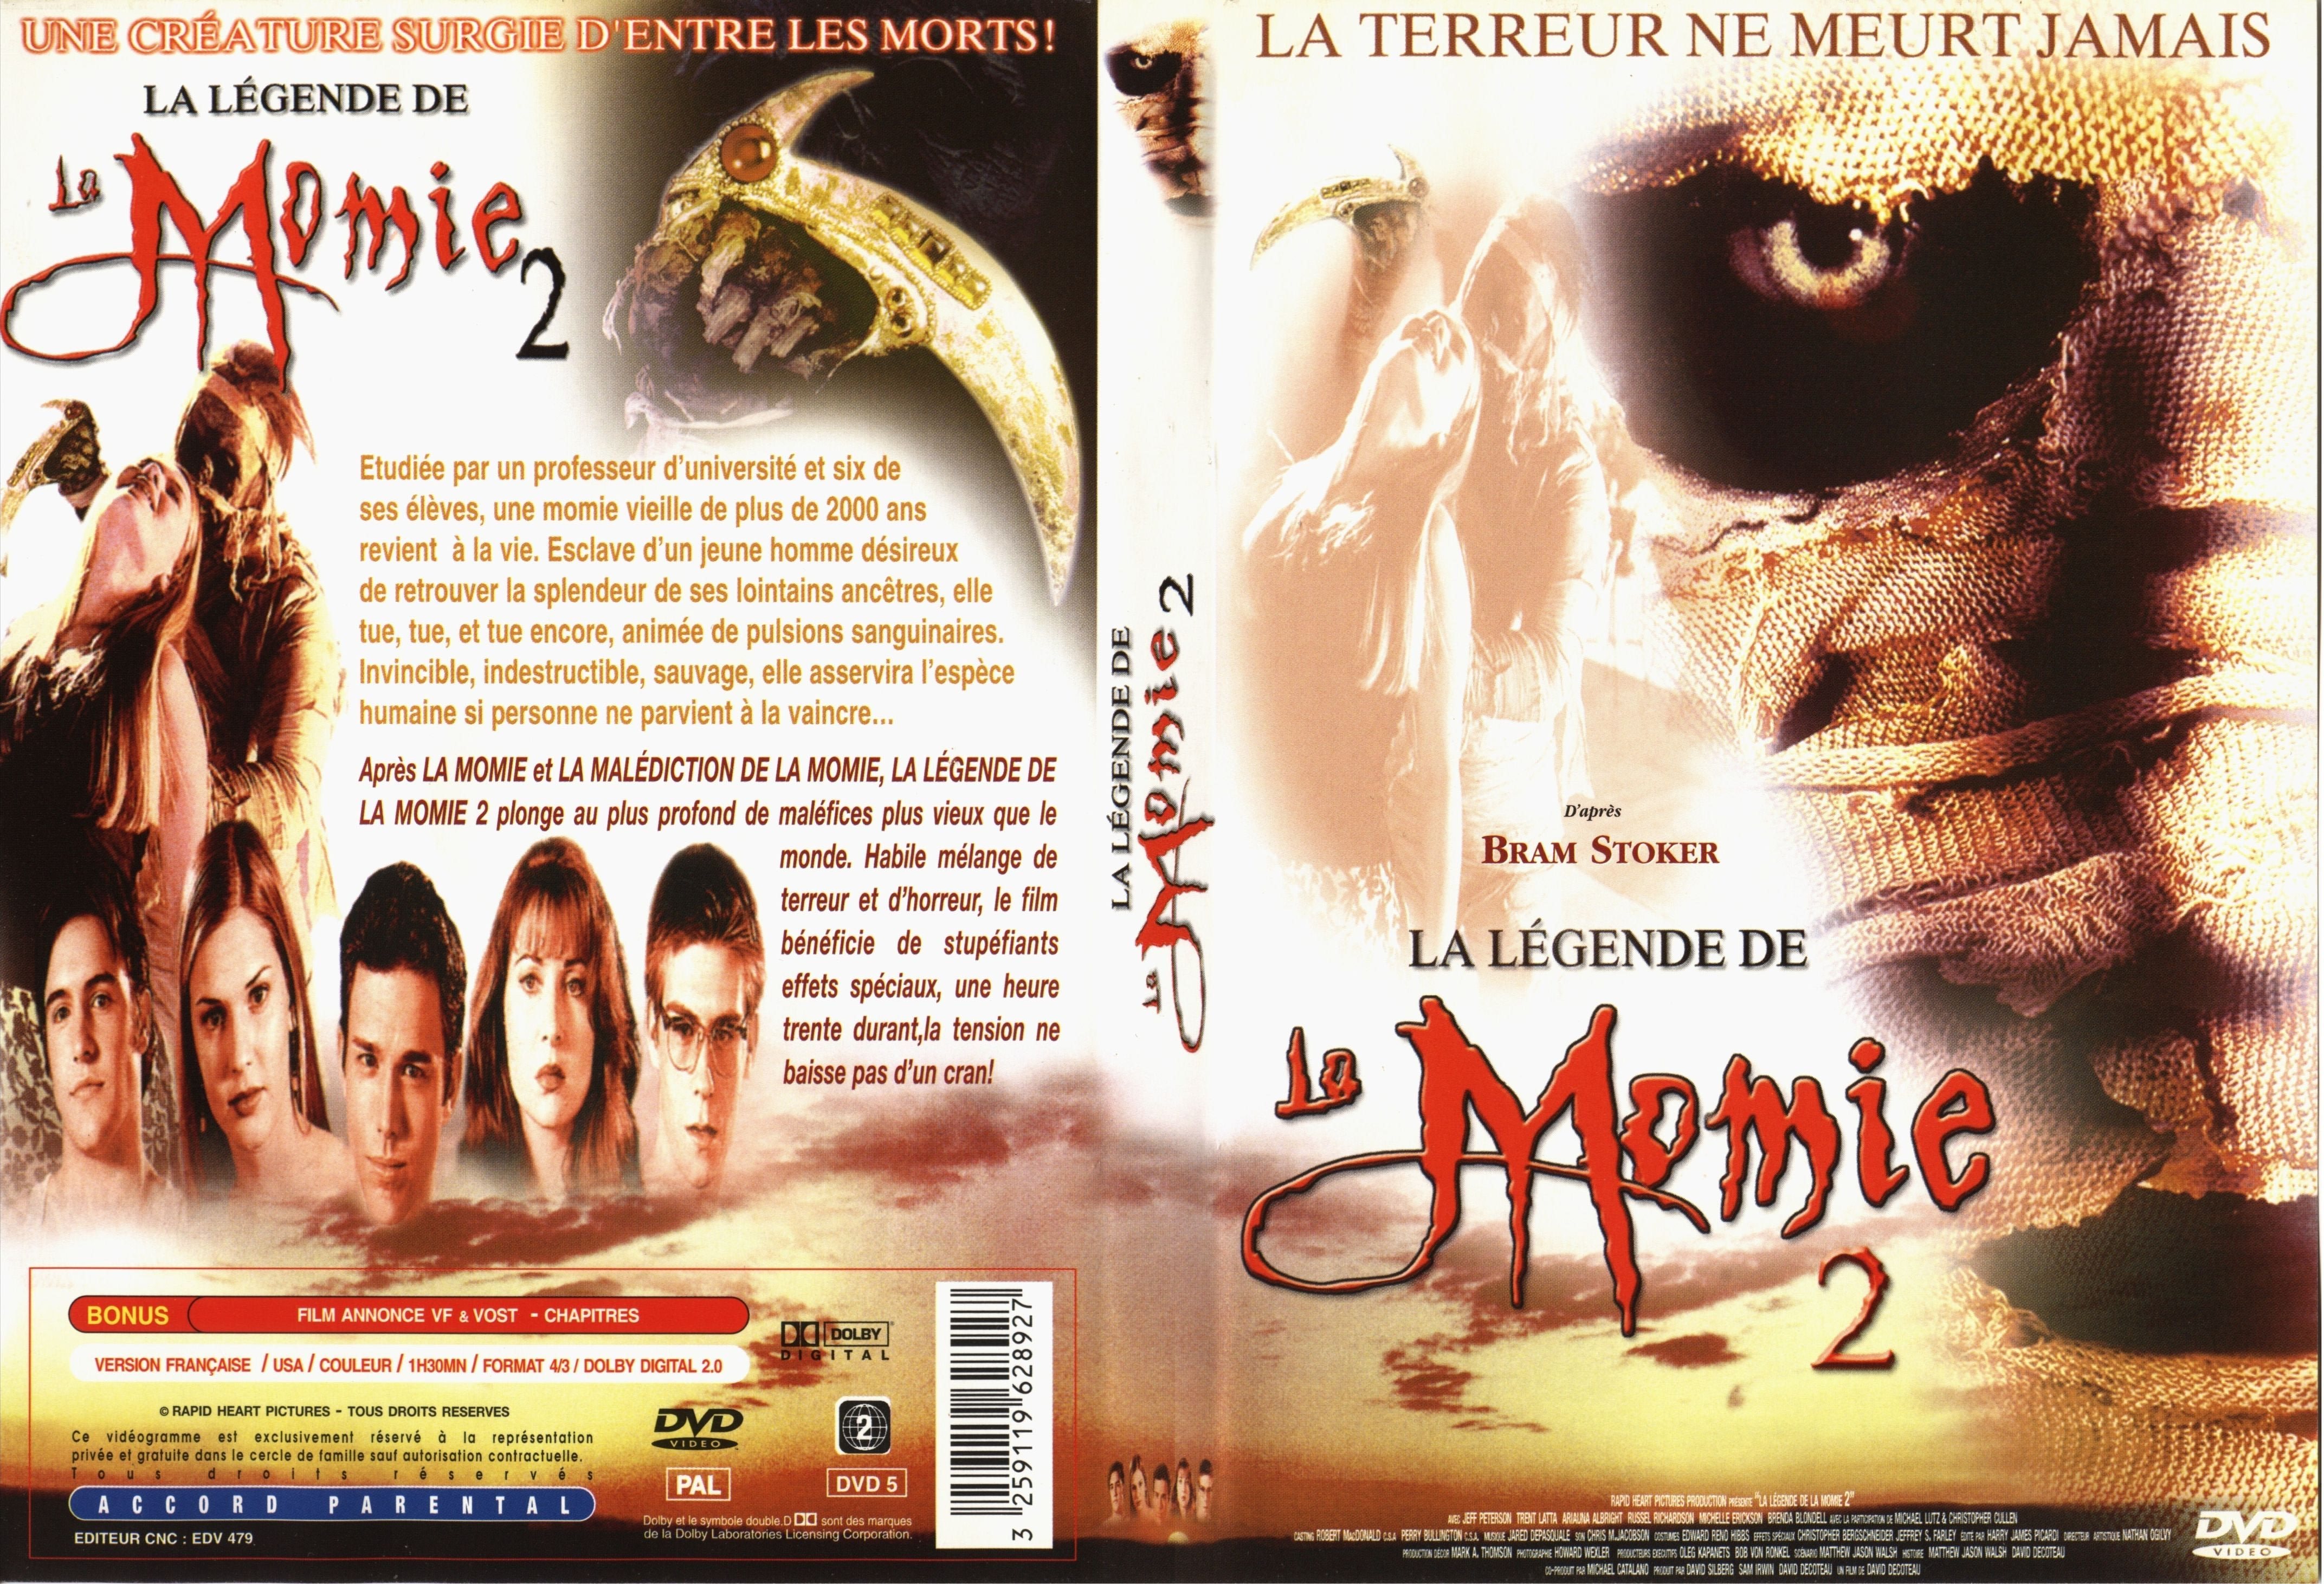 Jaquette DVD La lgende de la momie 2